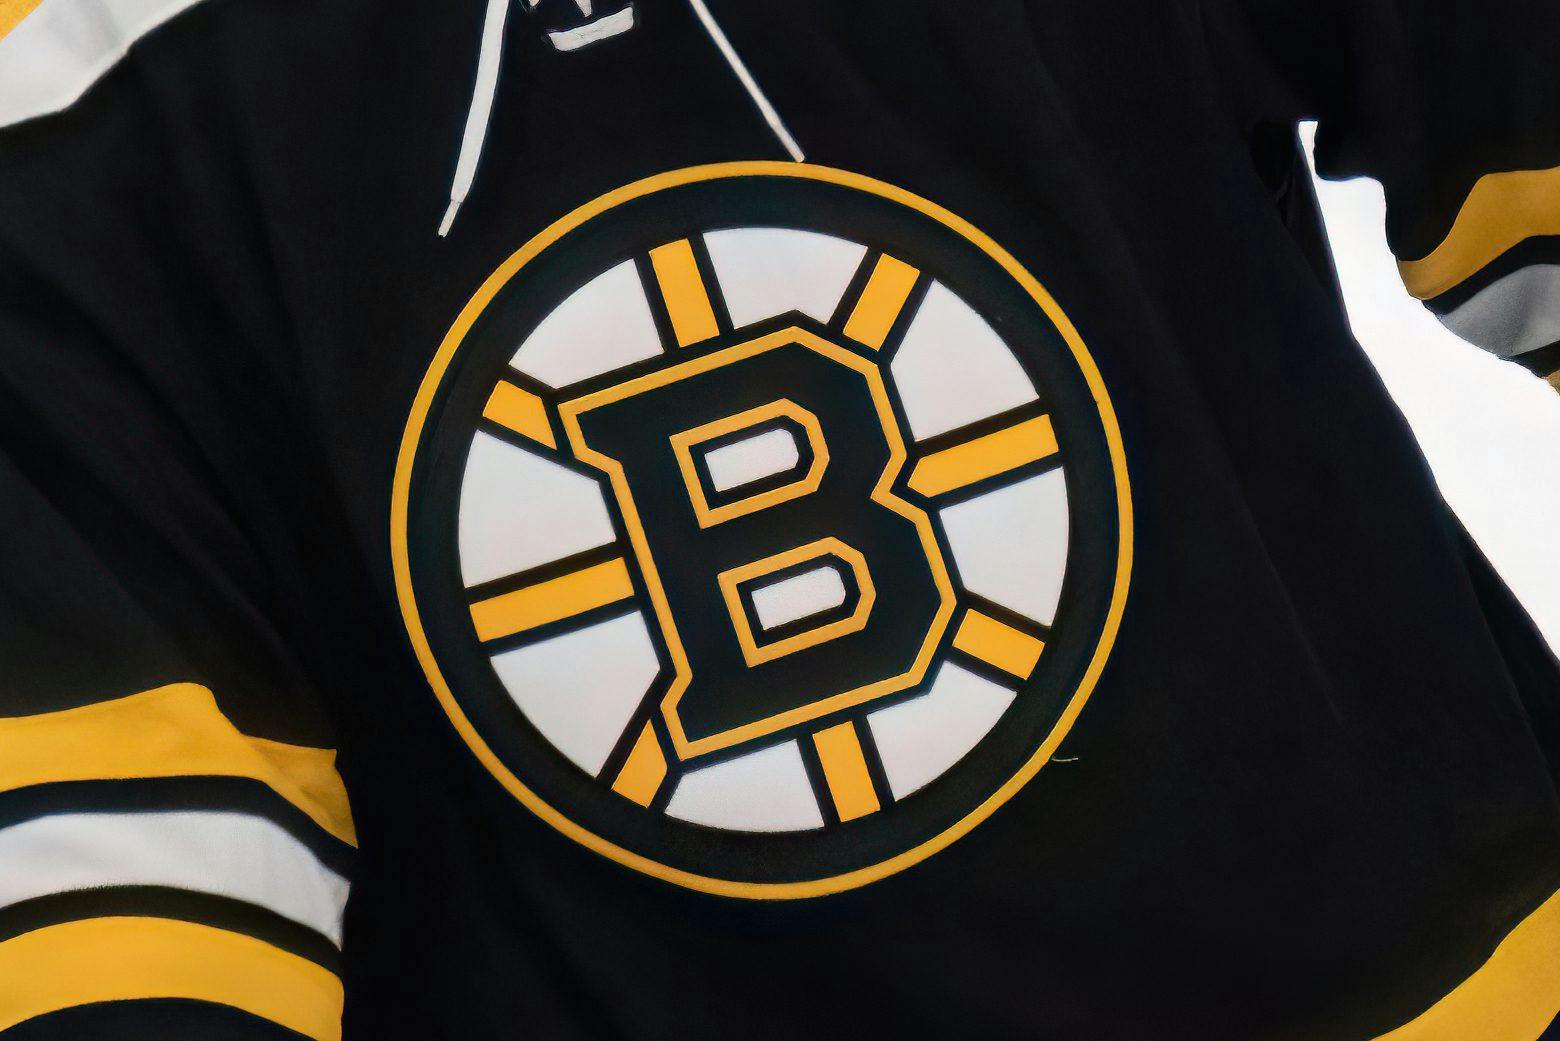 Bruins unveil new logo for centennial season - CBS Boston